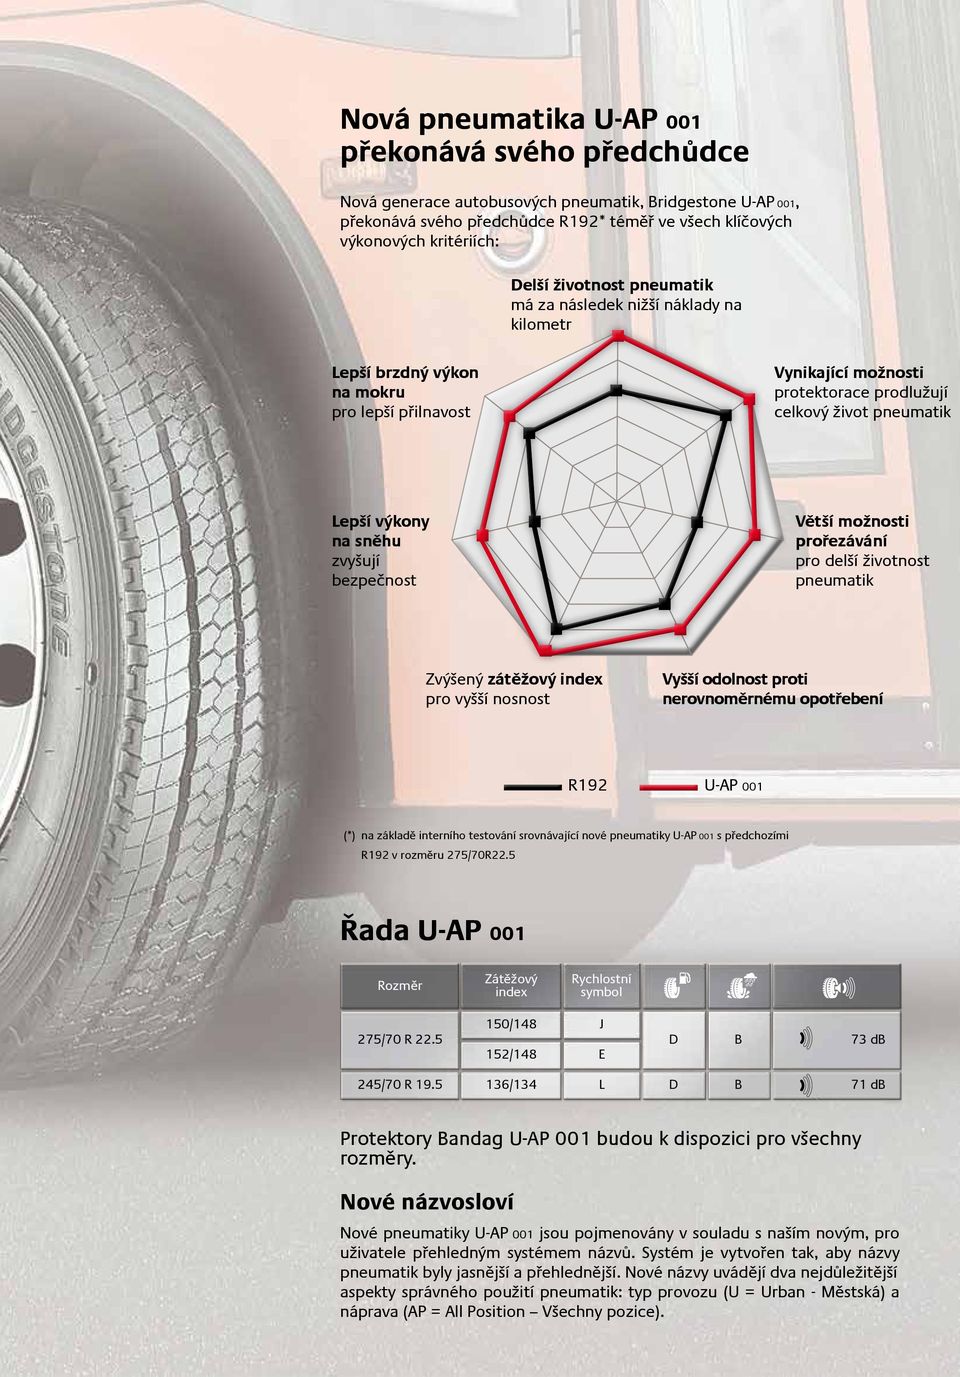 zvyšují bezpečnost Větší možnosti prořezávání pro delší životnost pneumatik Zvýšený zátěžový index pro vyšší nosnost Vyšší odolnost proti nerovnoměrnému opotřebení R192 U-AP 001 (*) na základě